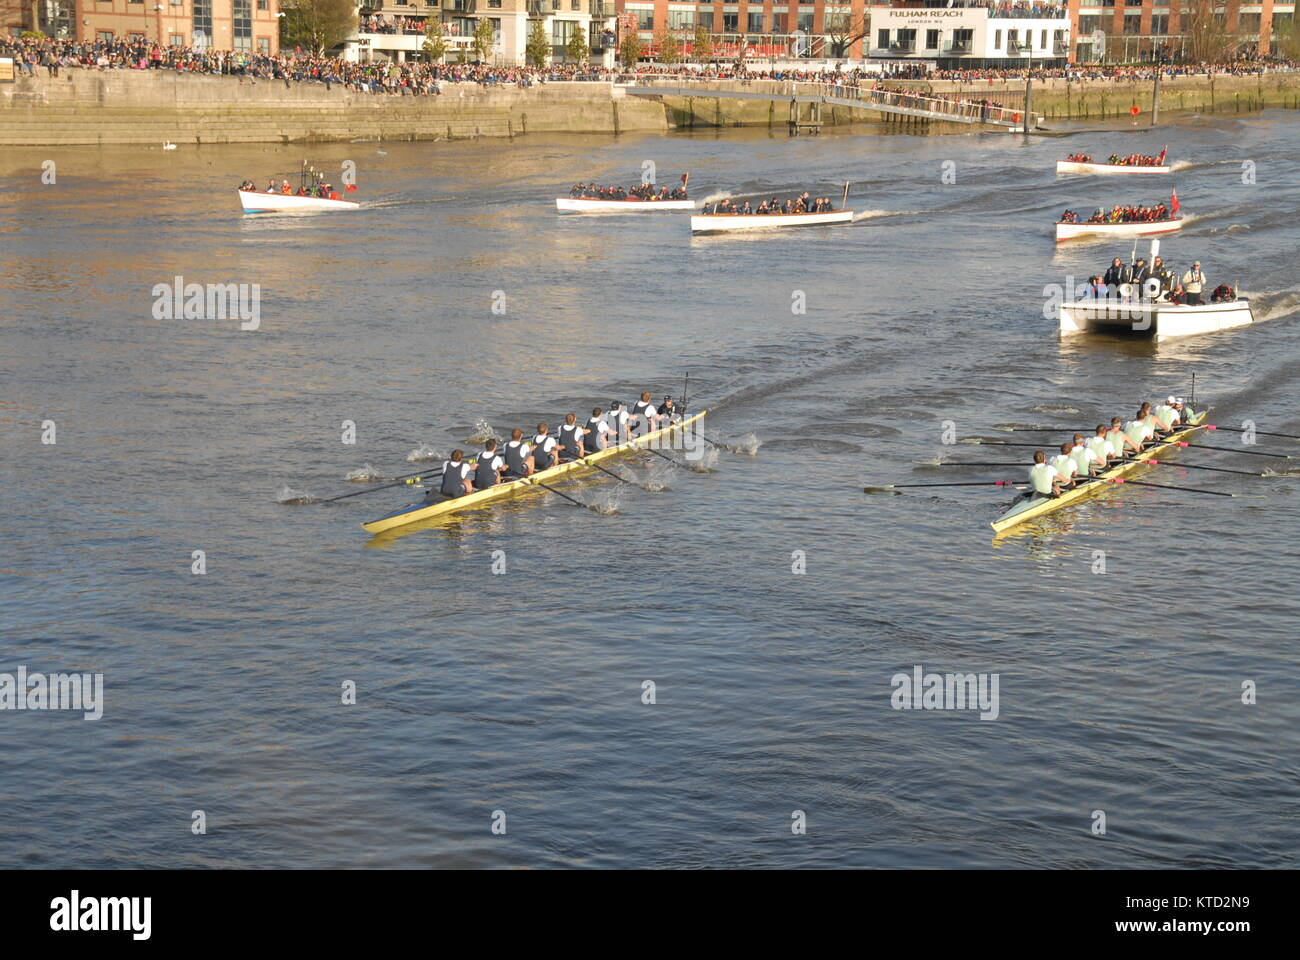 Hammersmith, Regno Unito - 11 Aprile 2015: boat race - Oxford contro Cambridge Foto Stock